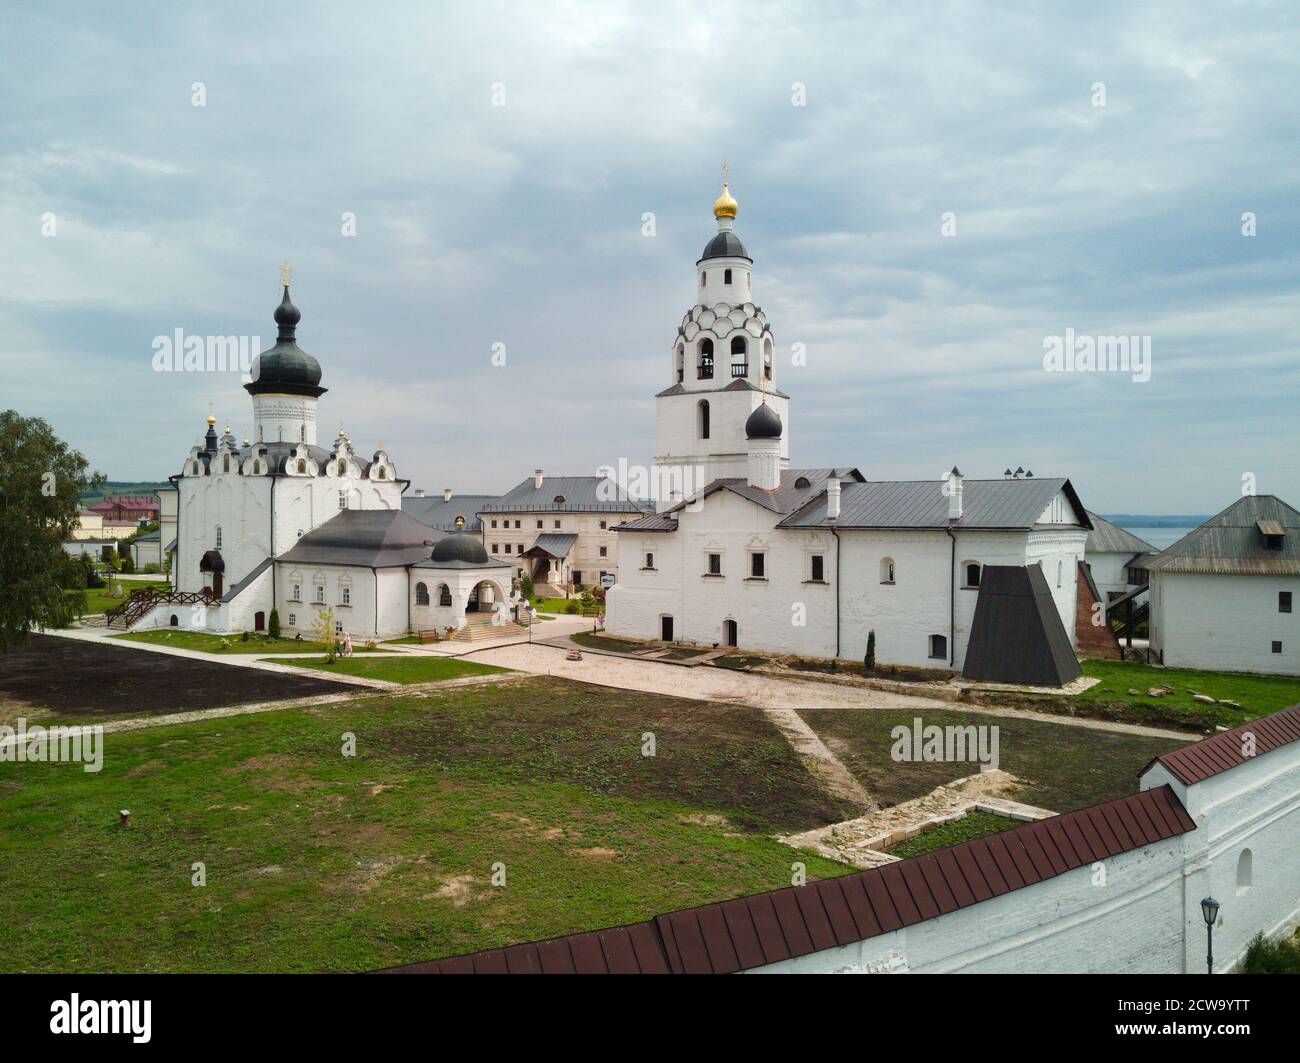 Monastère sur l'île de Sviyazhsk. Tatarstan Russie. Photographié à partir d'un drone Banque D'Images